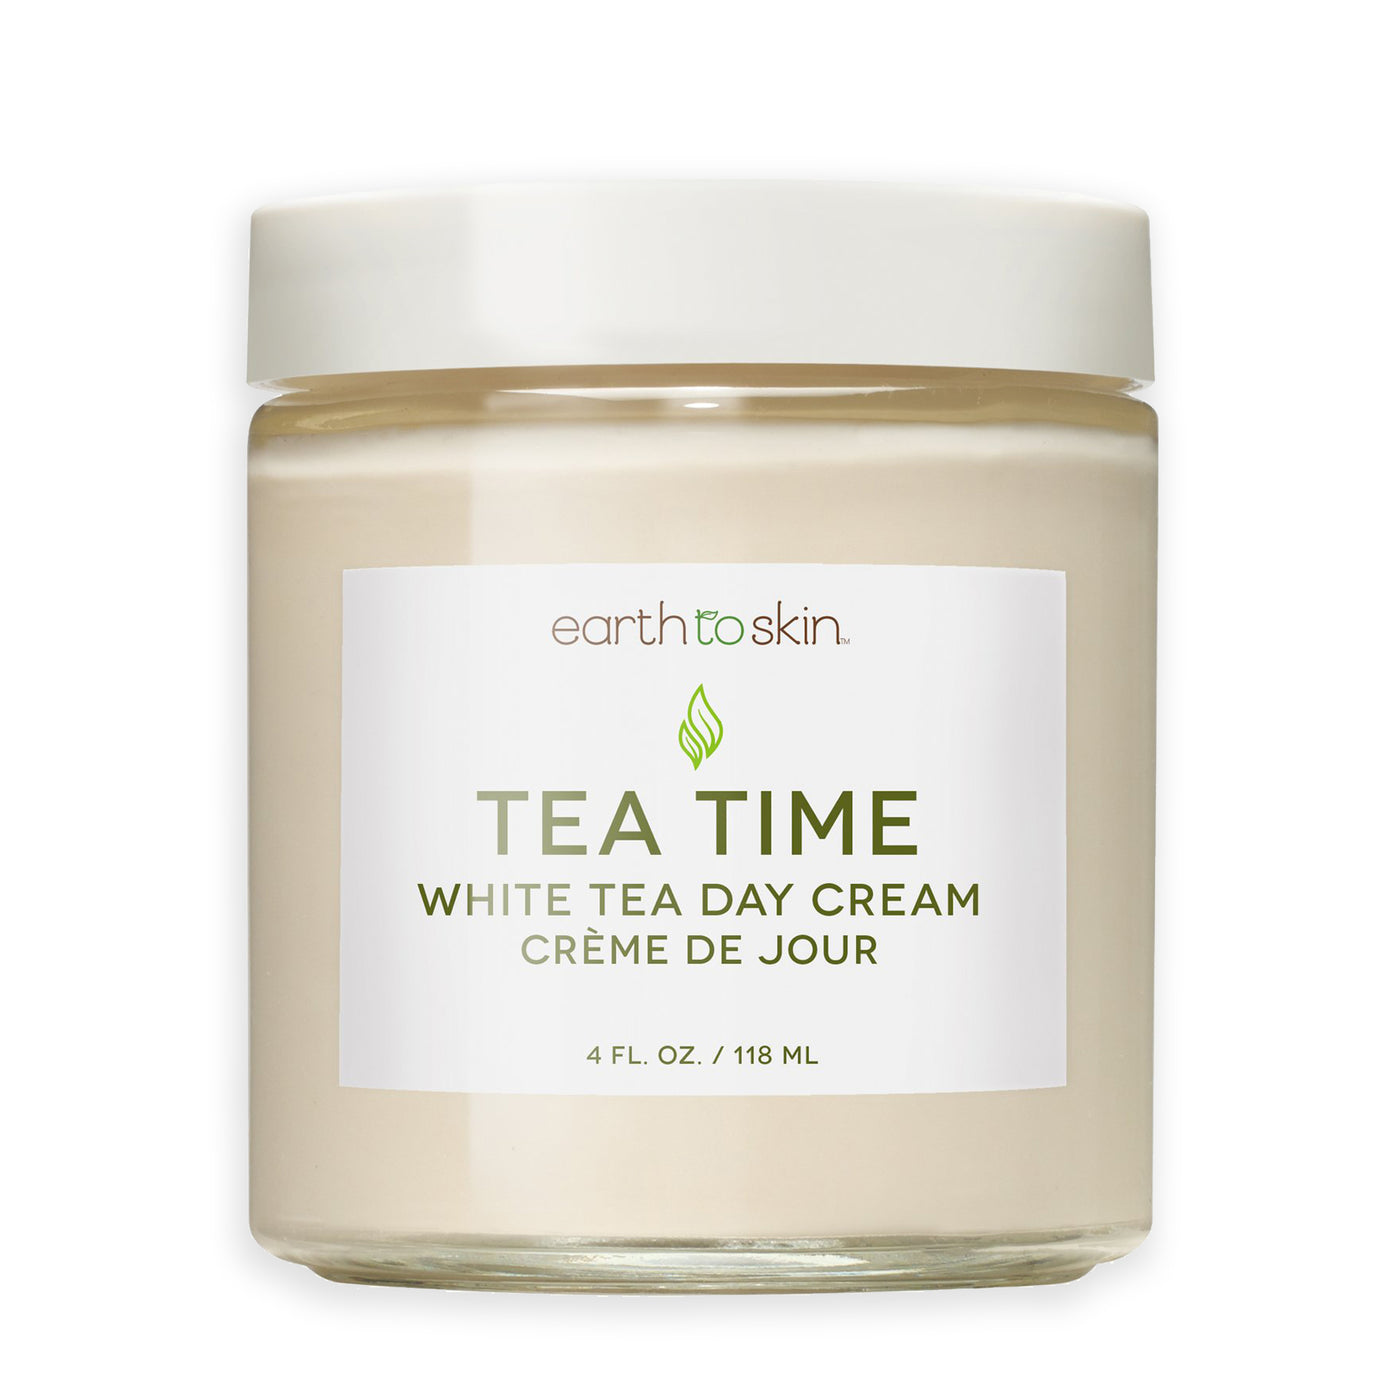 Tea Time White Tea Day Cream